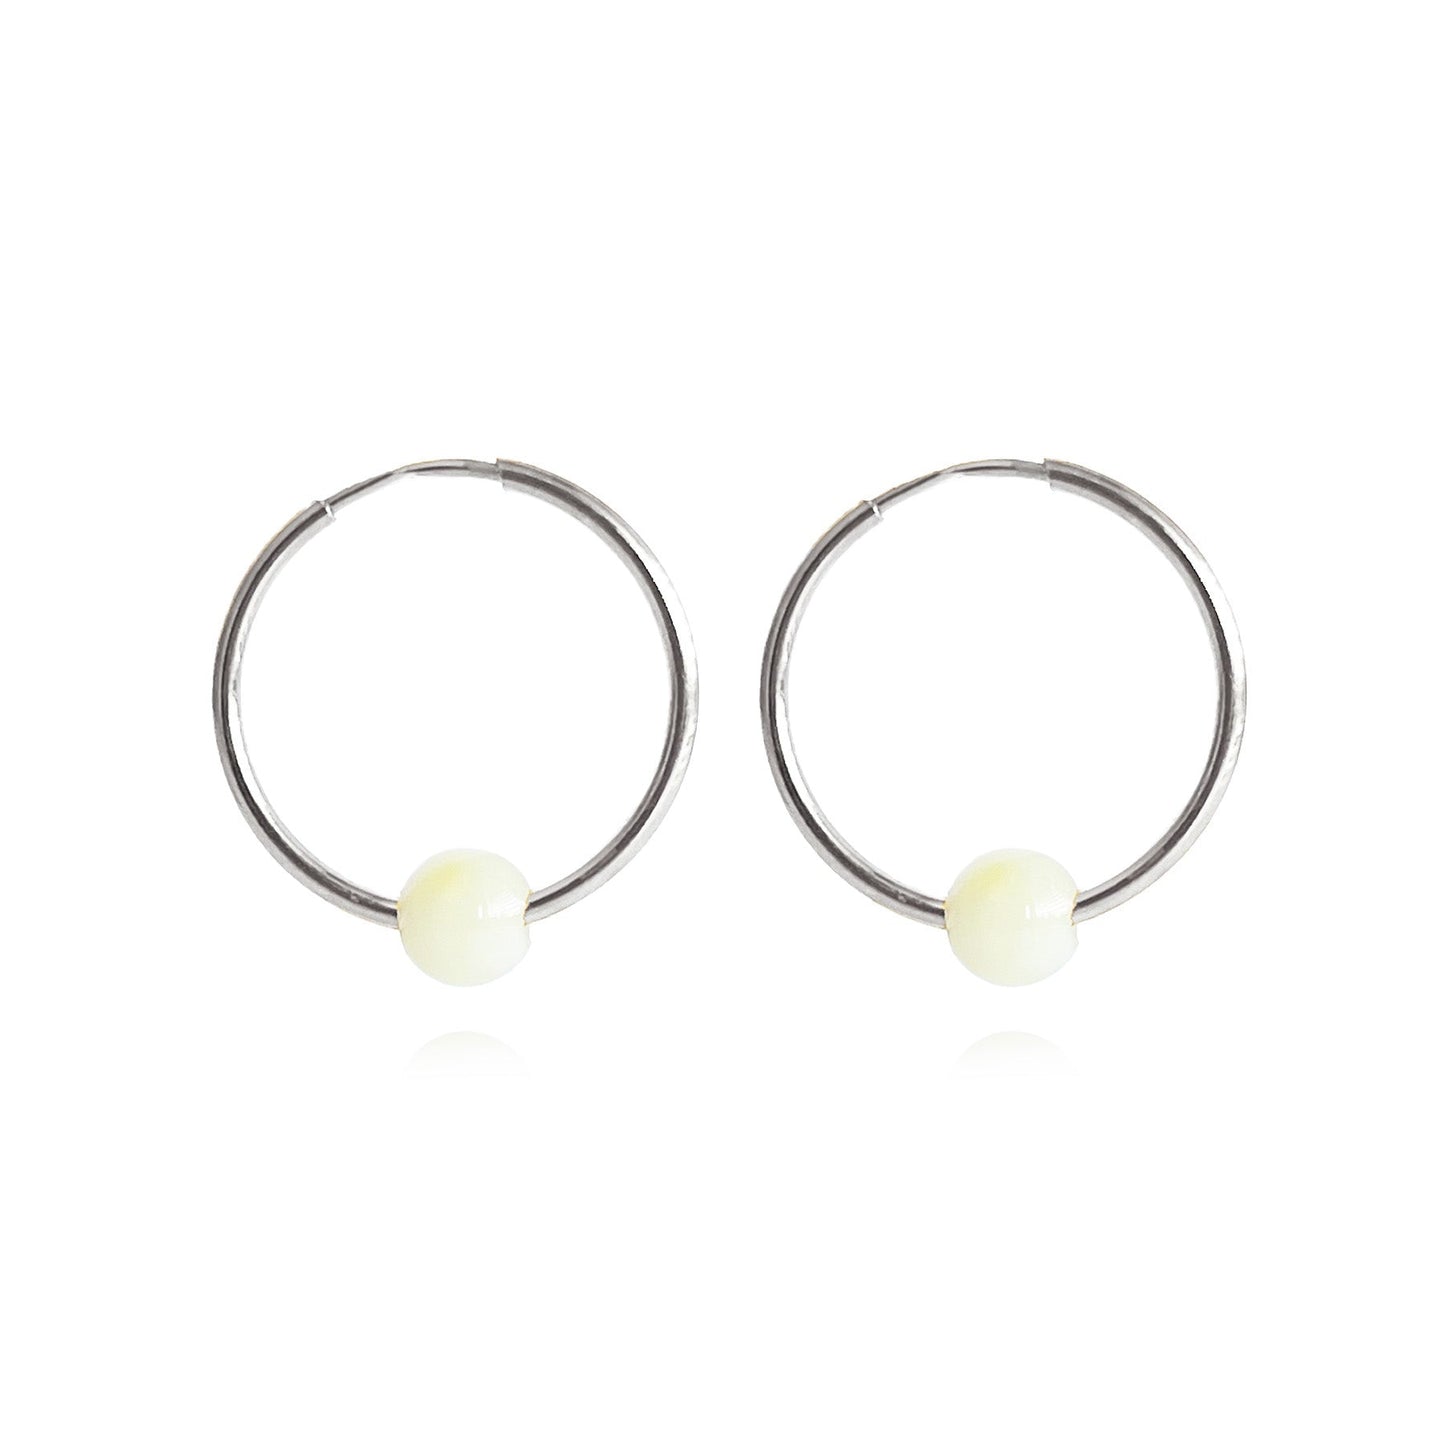 Hoop earrings, diameter 25mm, silver/gilded silver 925 "Snowflake"